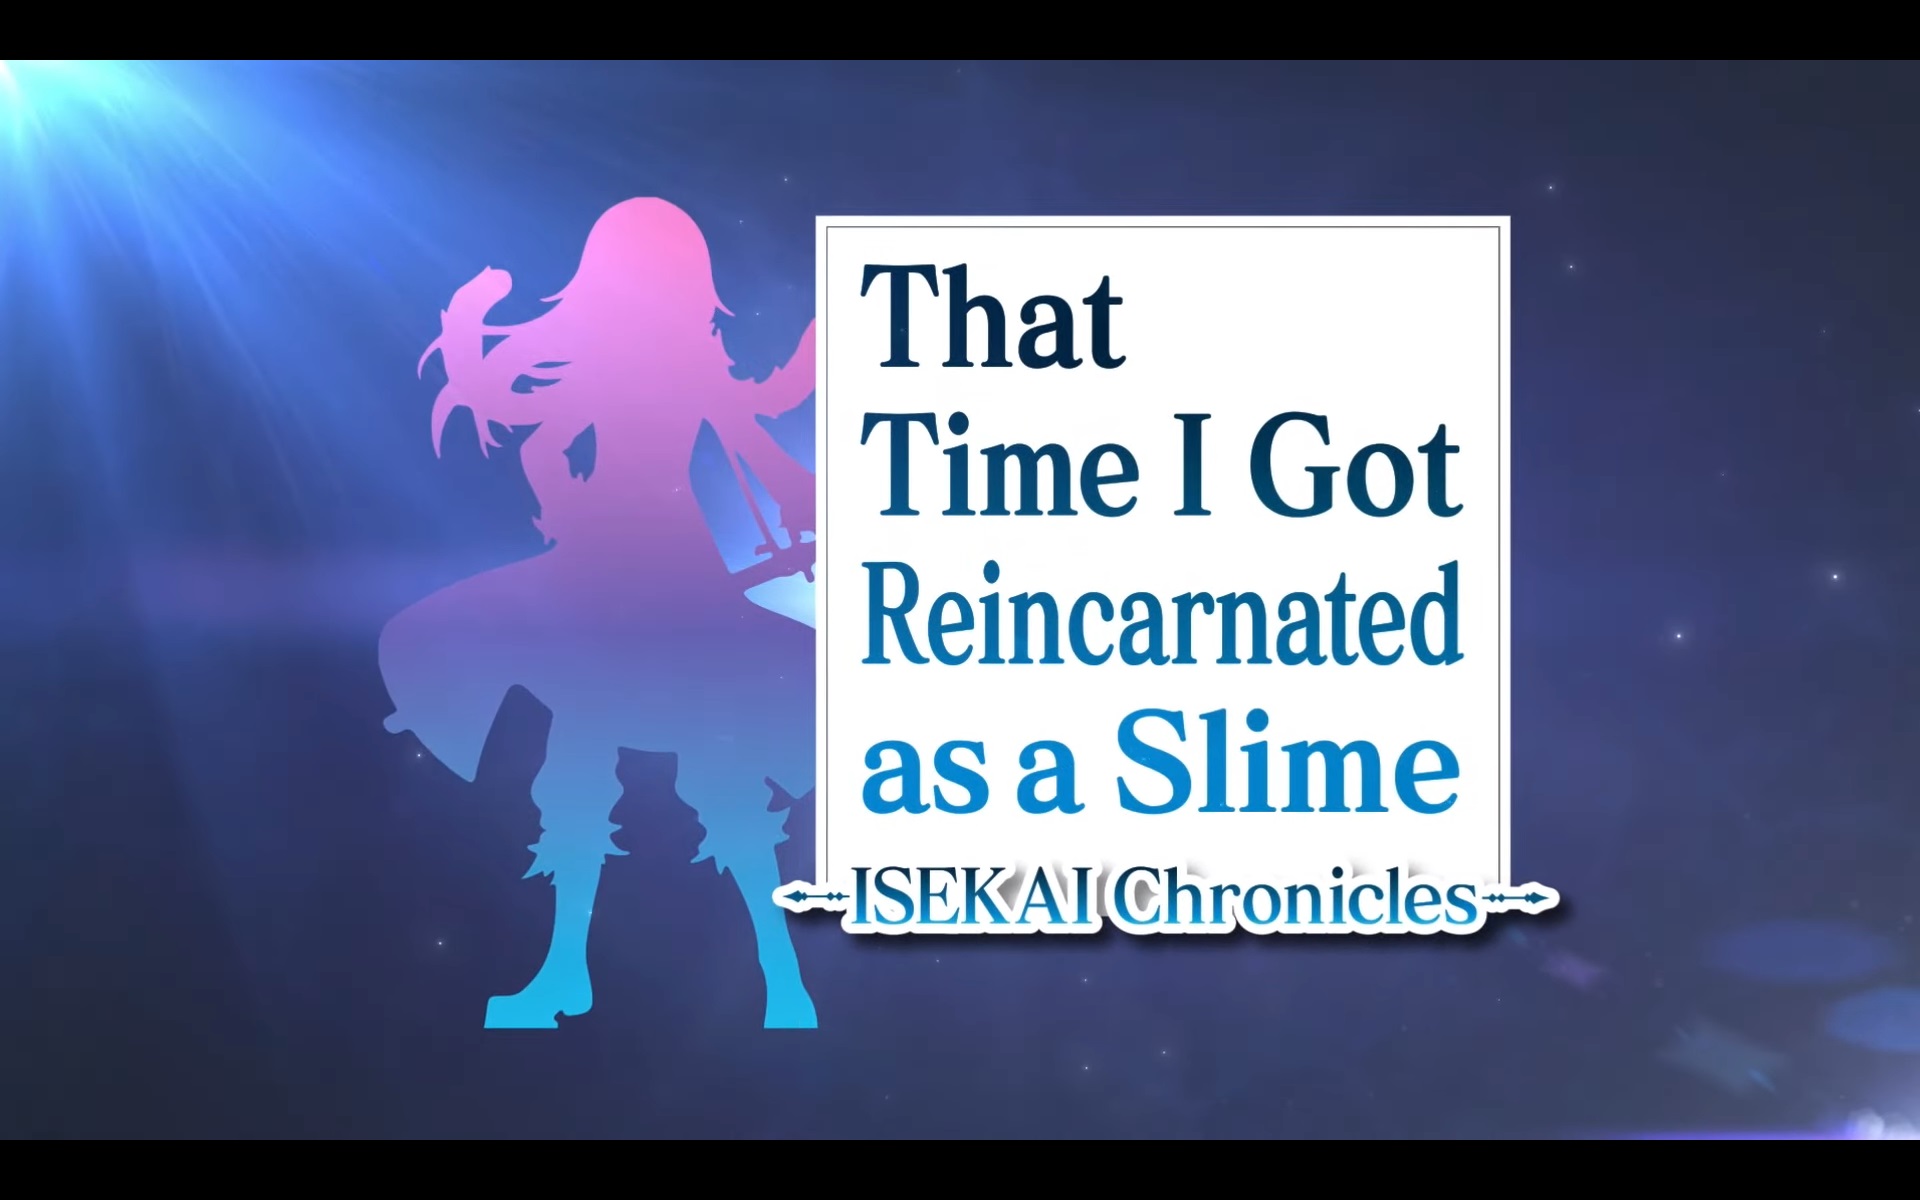 Chuyển đổi kích thước tệp – That Time I Got Reincarnated as a Slime Isekai Chronicles, SCHiM, v.v.